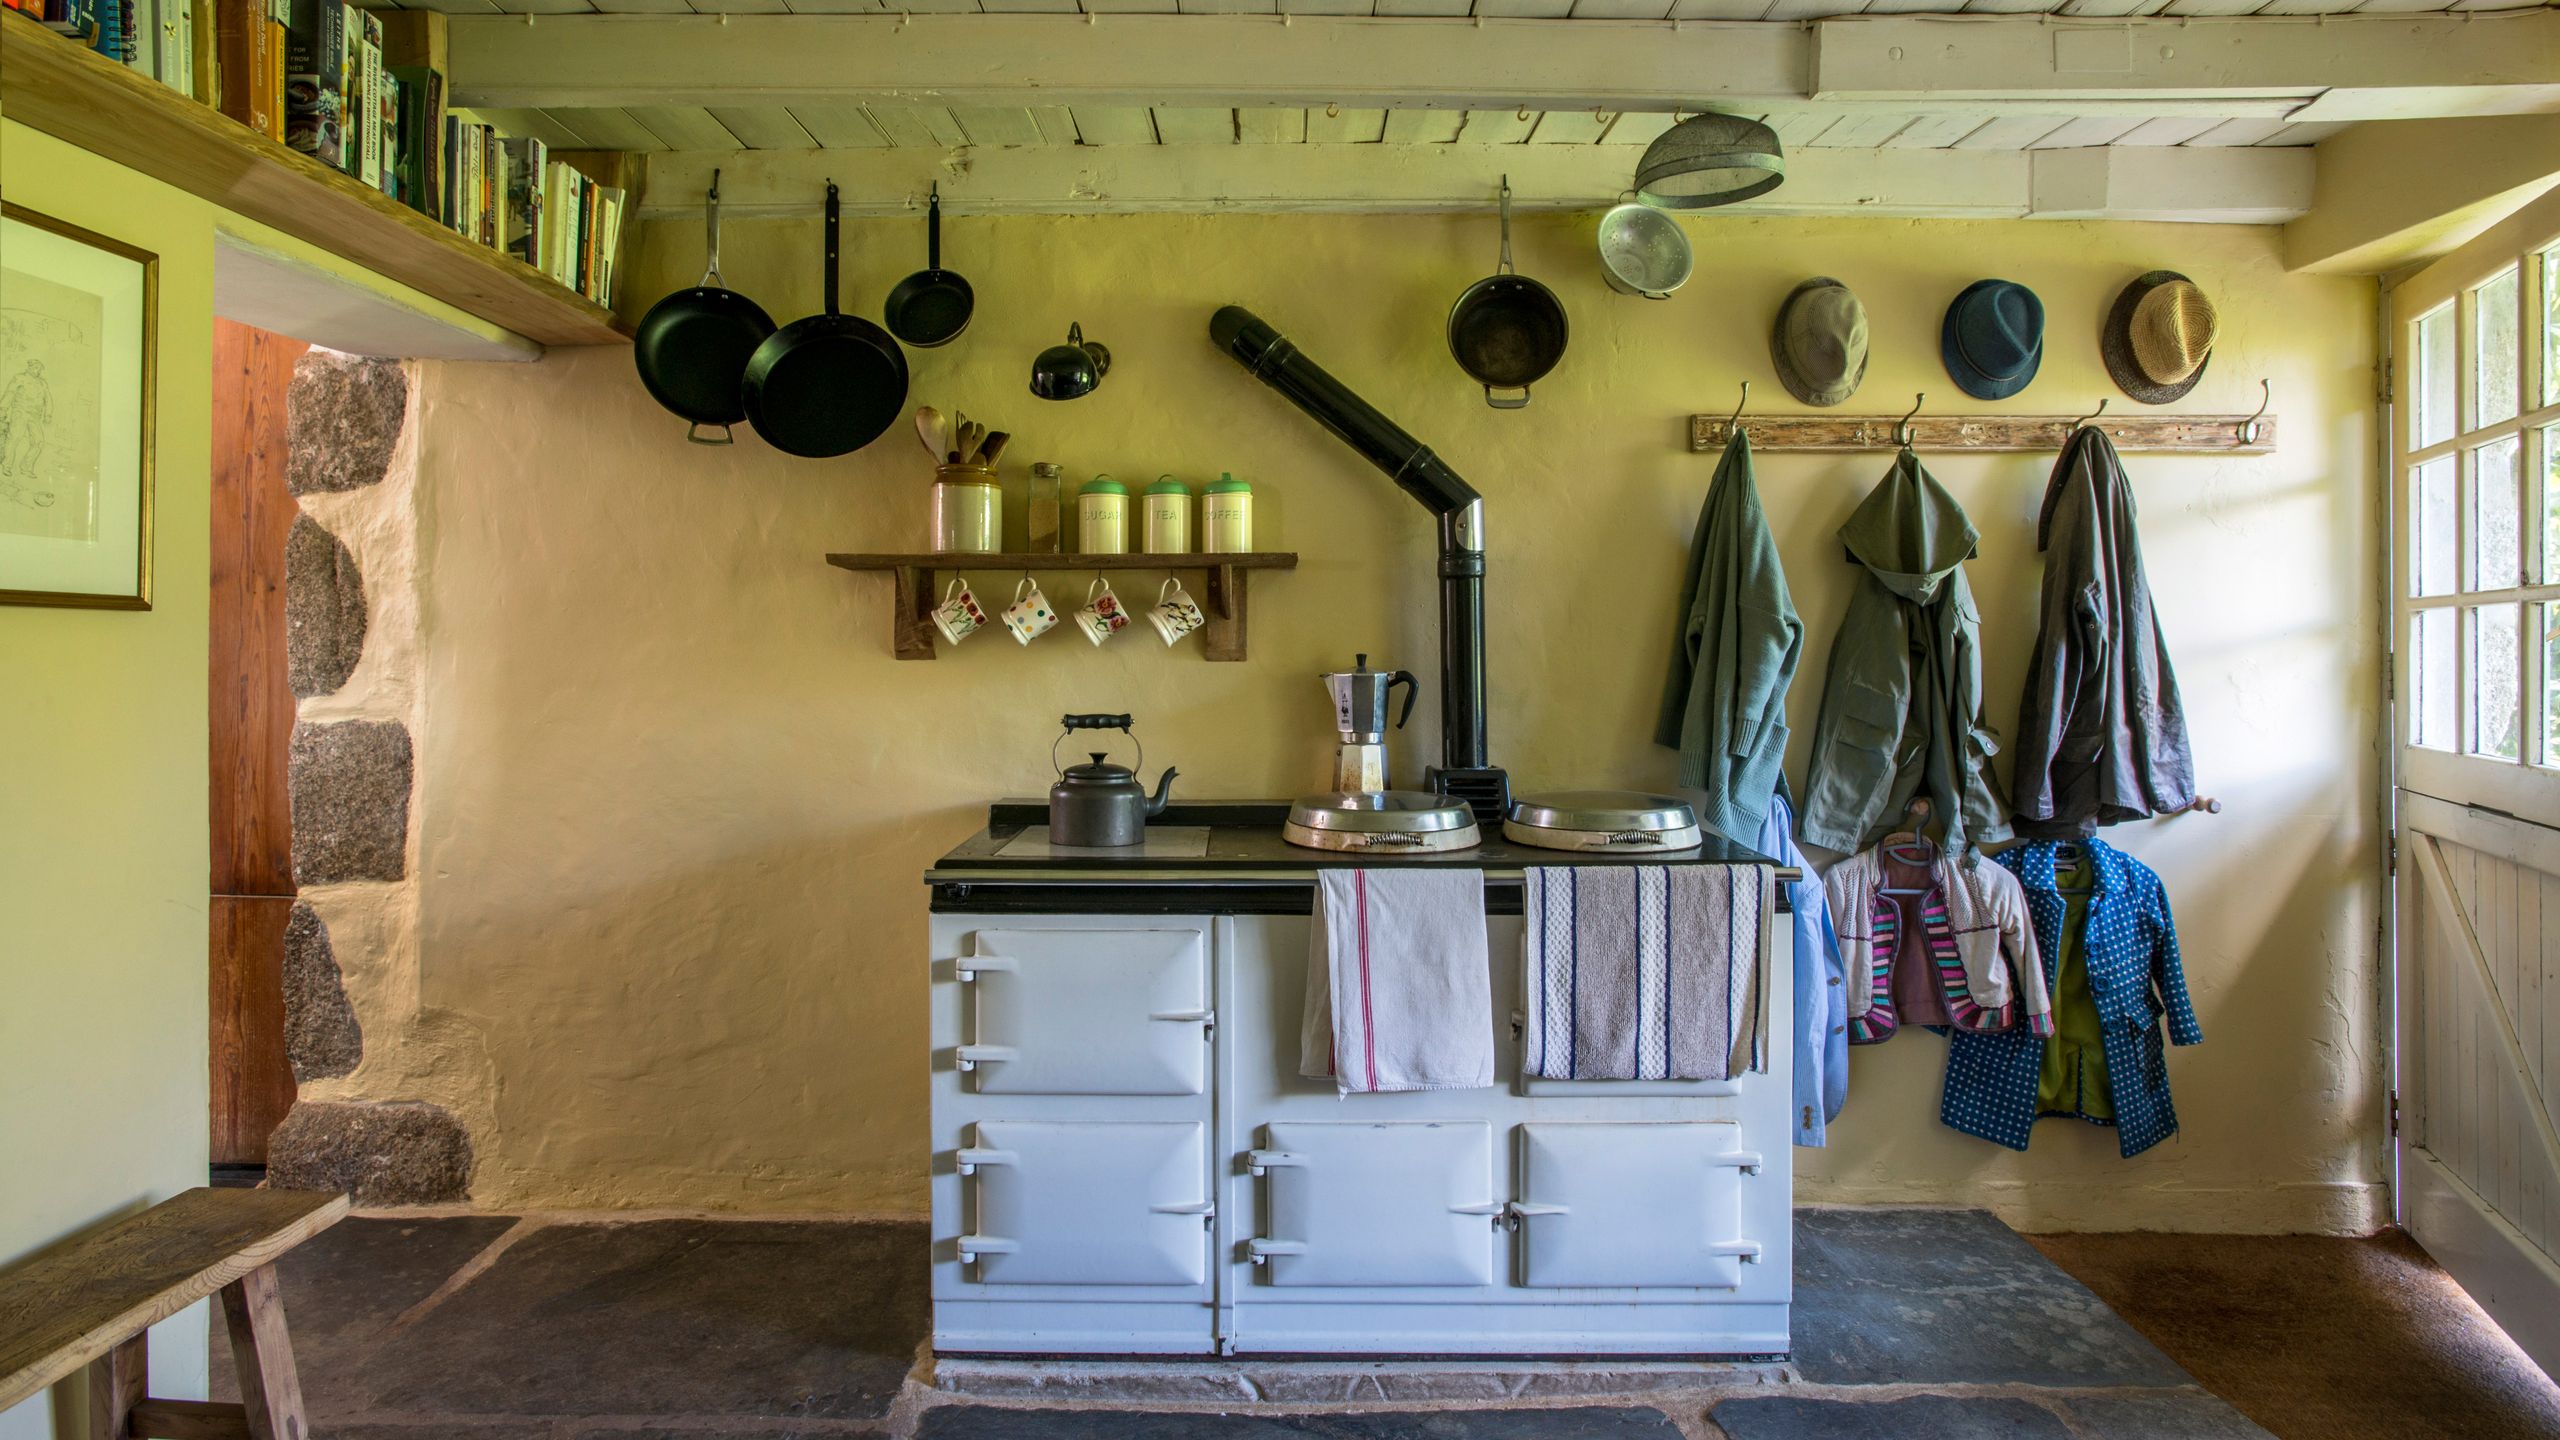  Cuisinière Aga dans une cuisine de ferme rustique en pierre